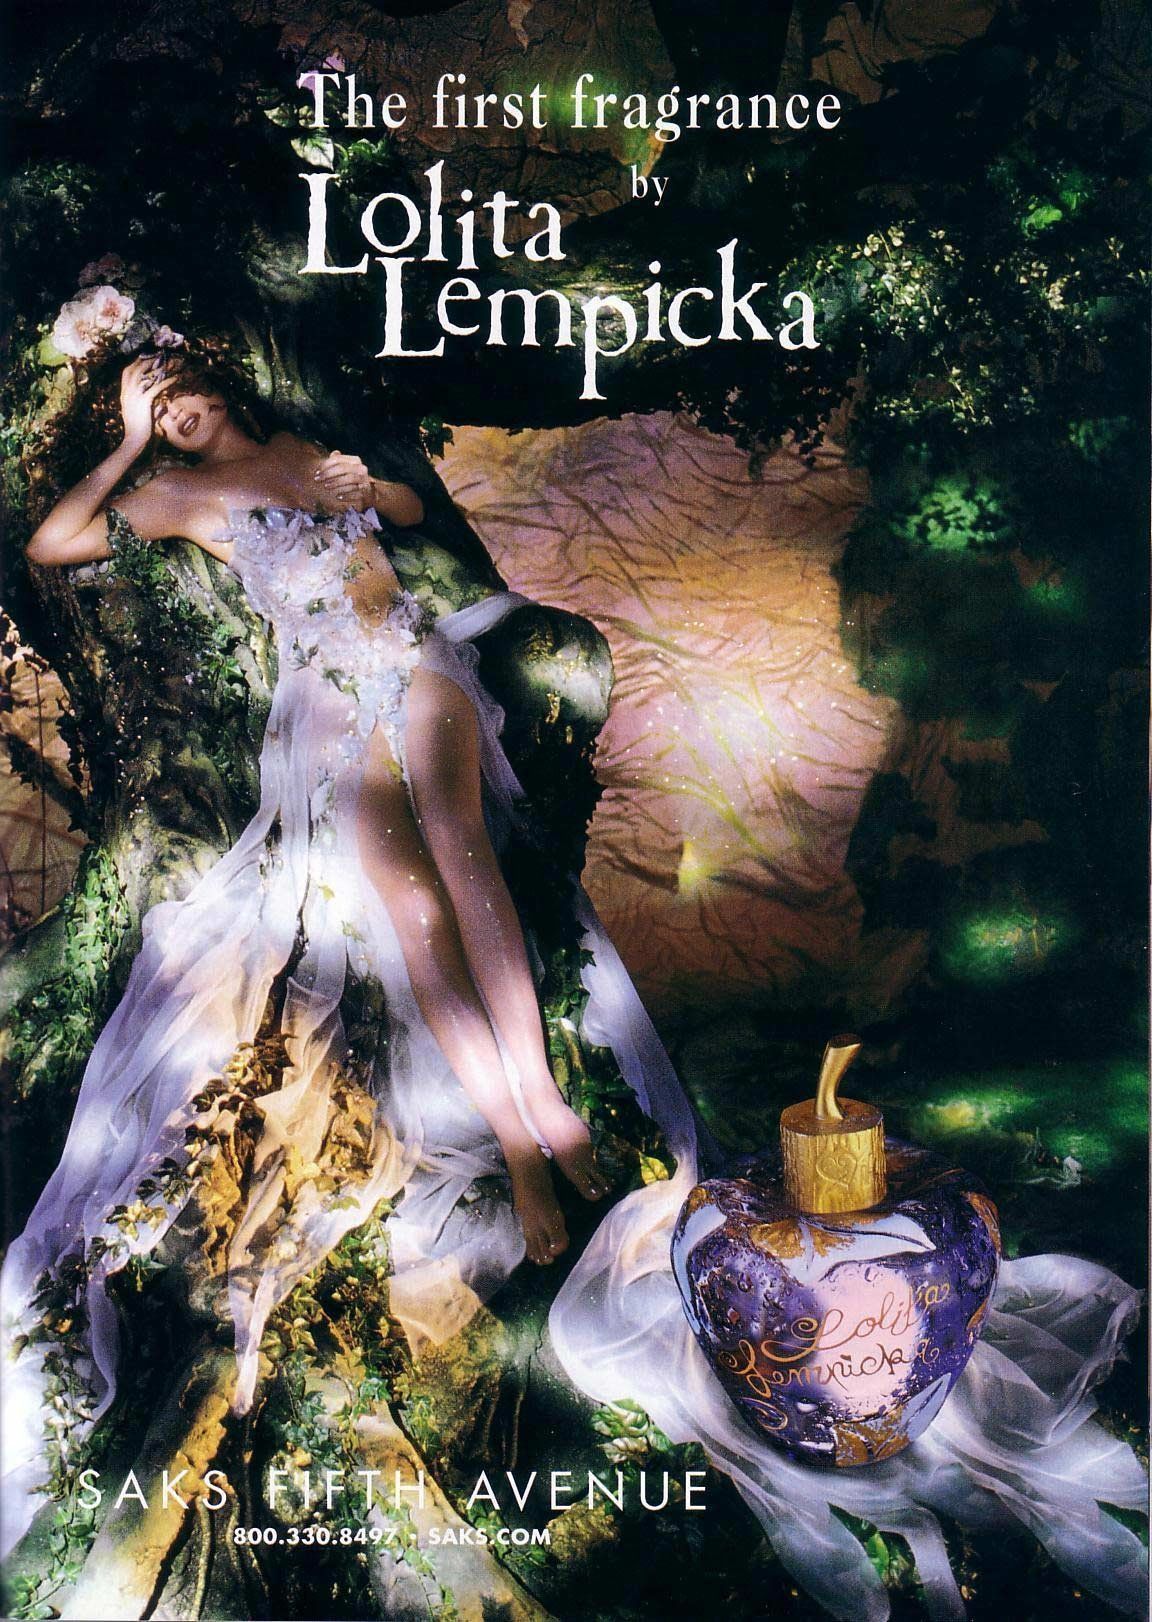 Lolita Lempicka Lolita Lempicka for women afiş poster reklam commercial ilk parfüm.jpg